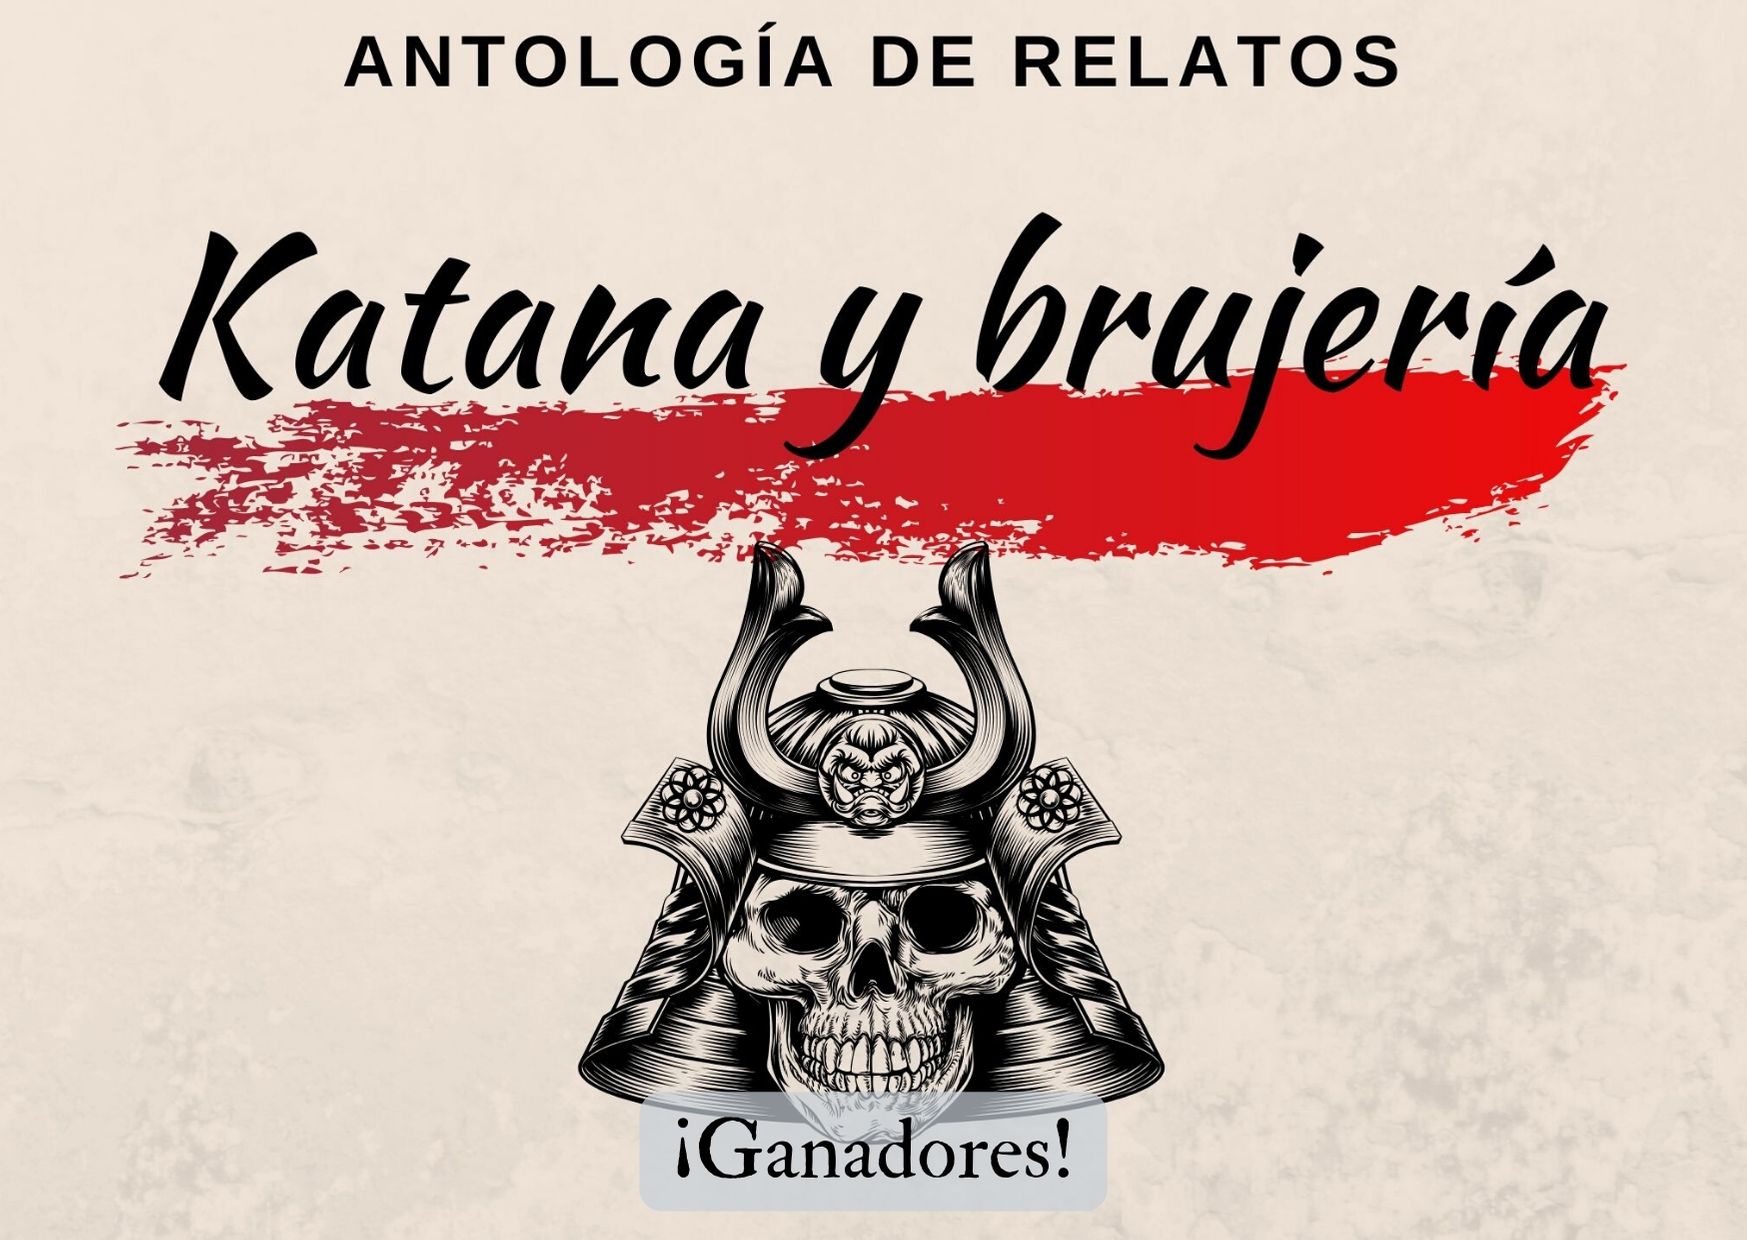 Ganadores del concurso de relatos para la antología Katana y brujería